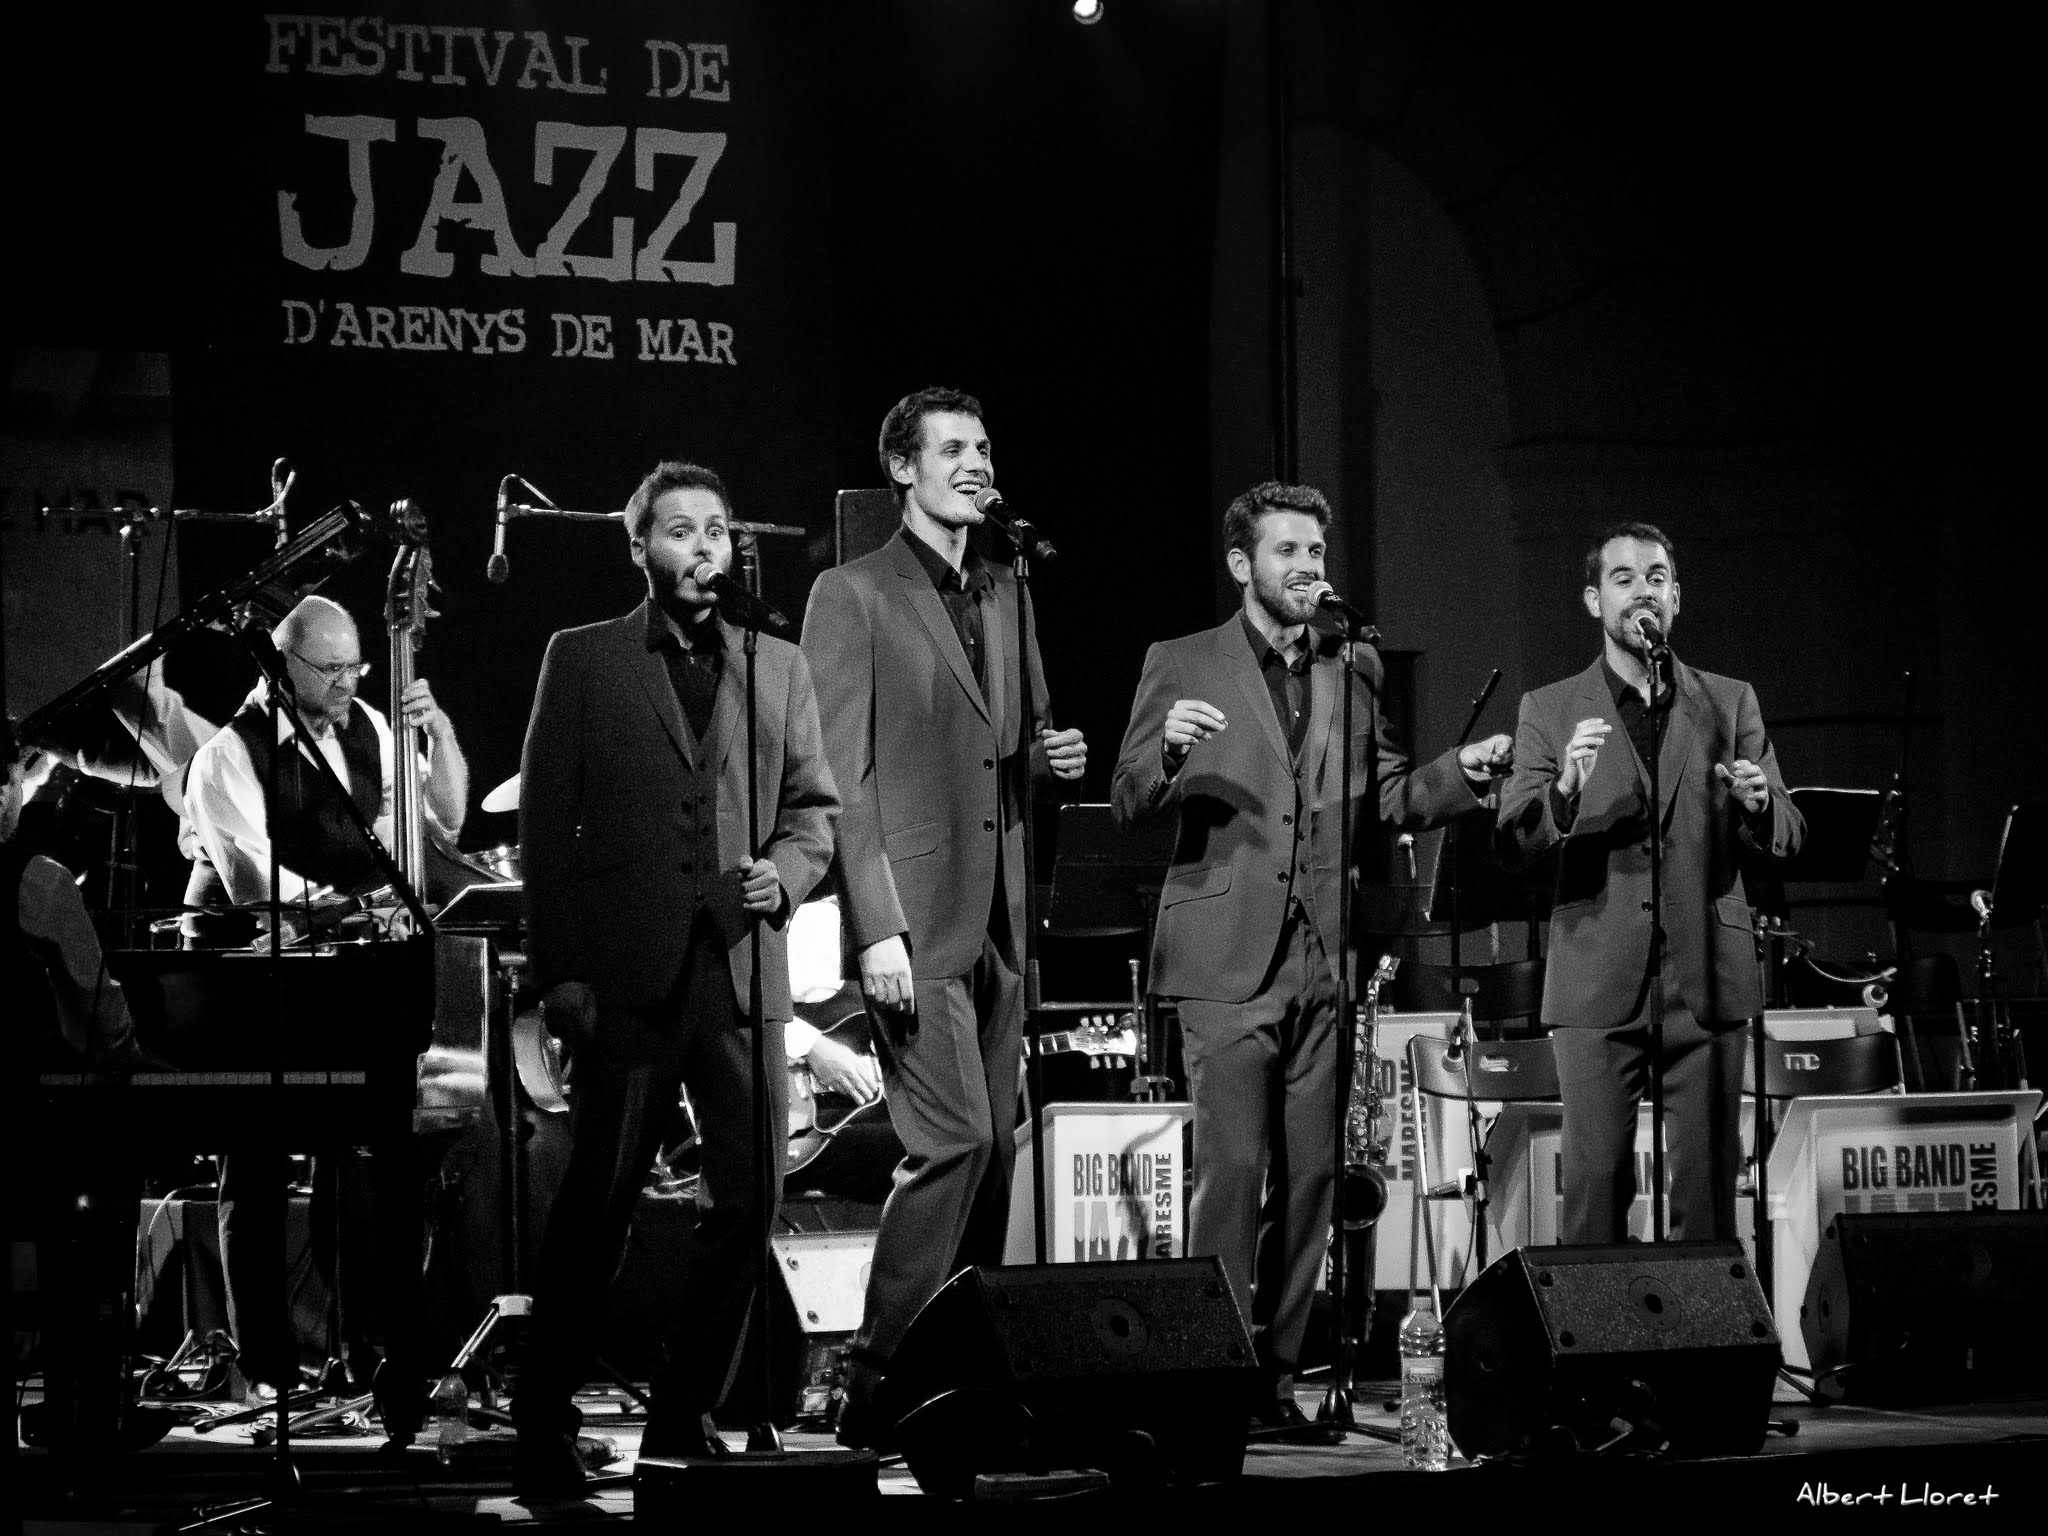 Imatges del 25 Festival de Jazz d'Arenys de Mar - 2016 - Foto 13518980